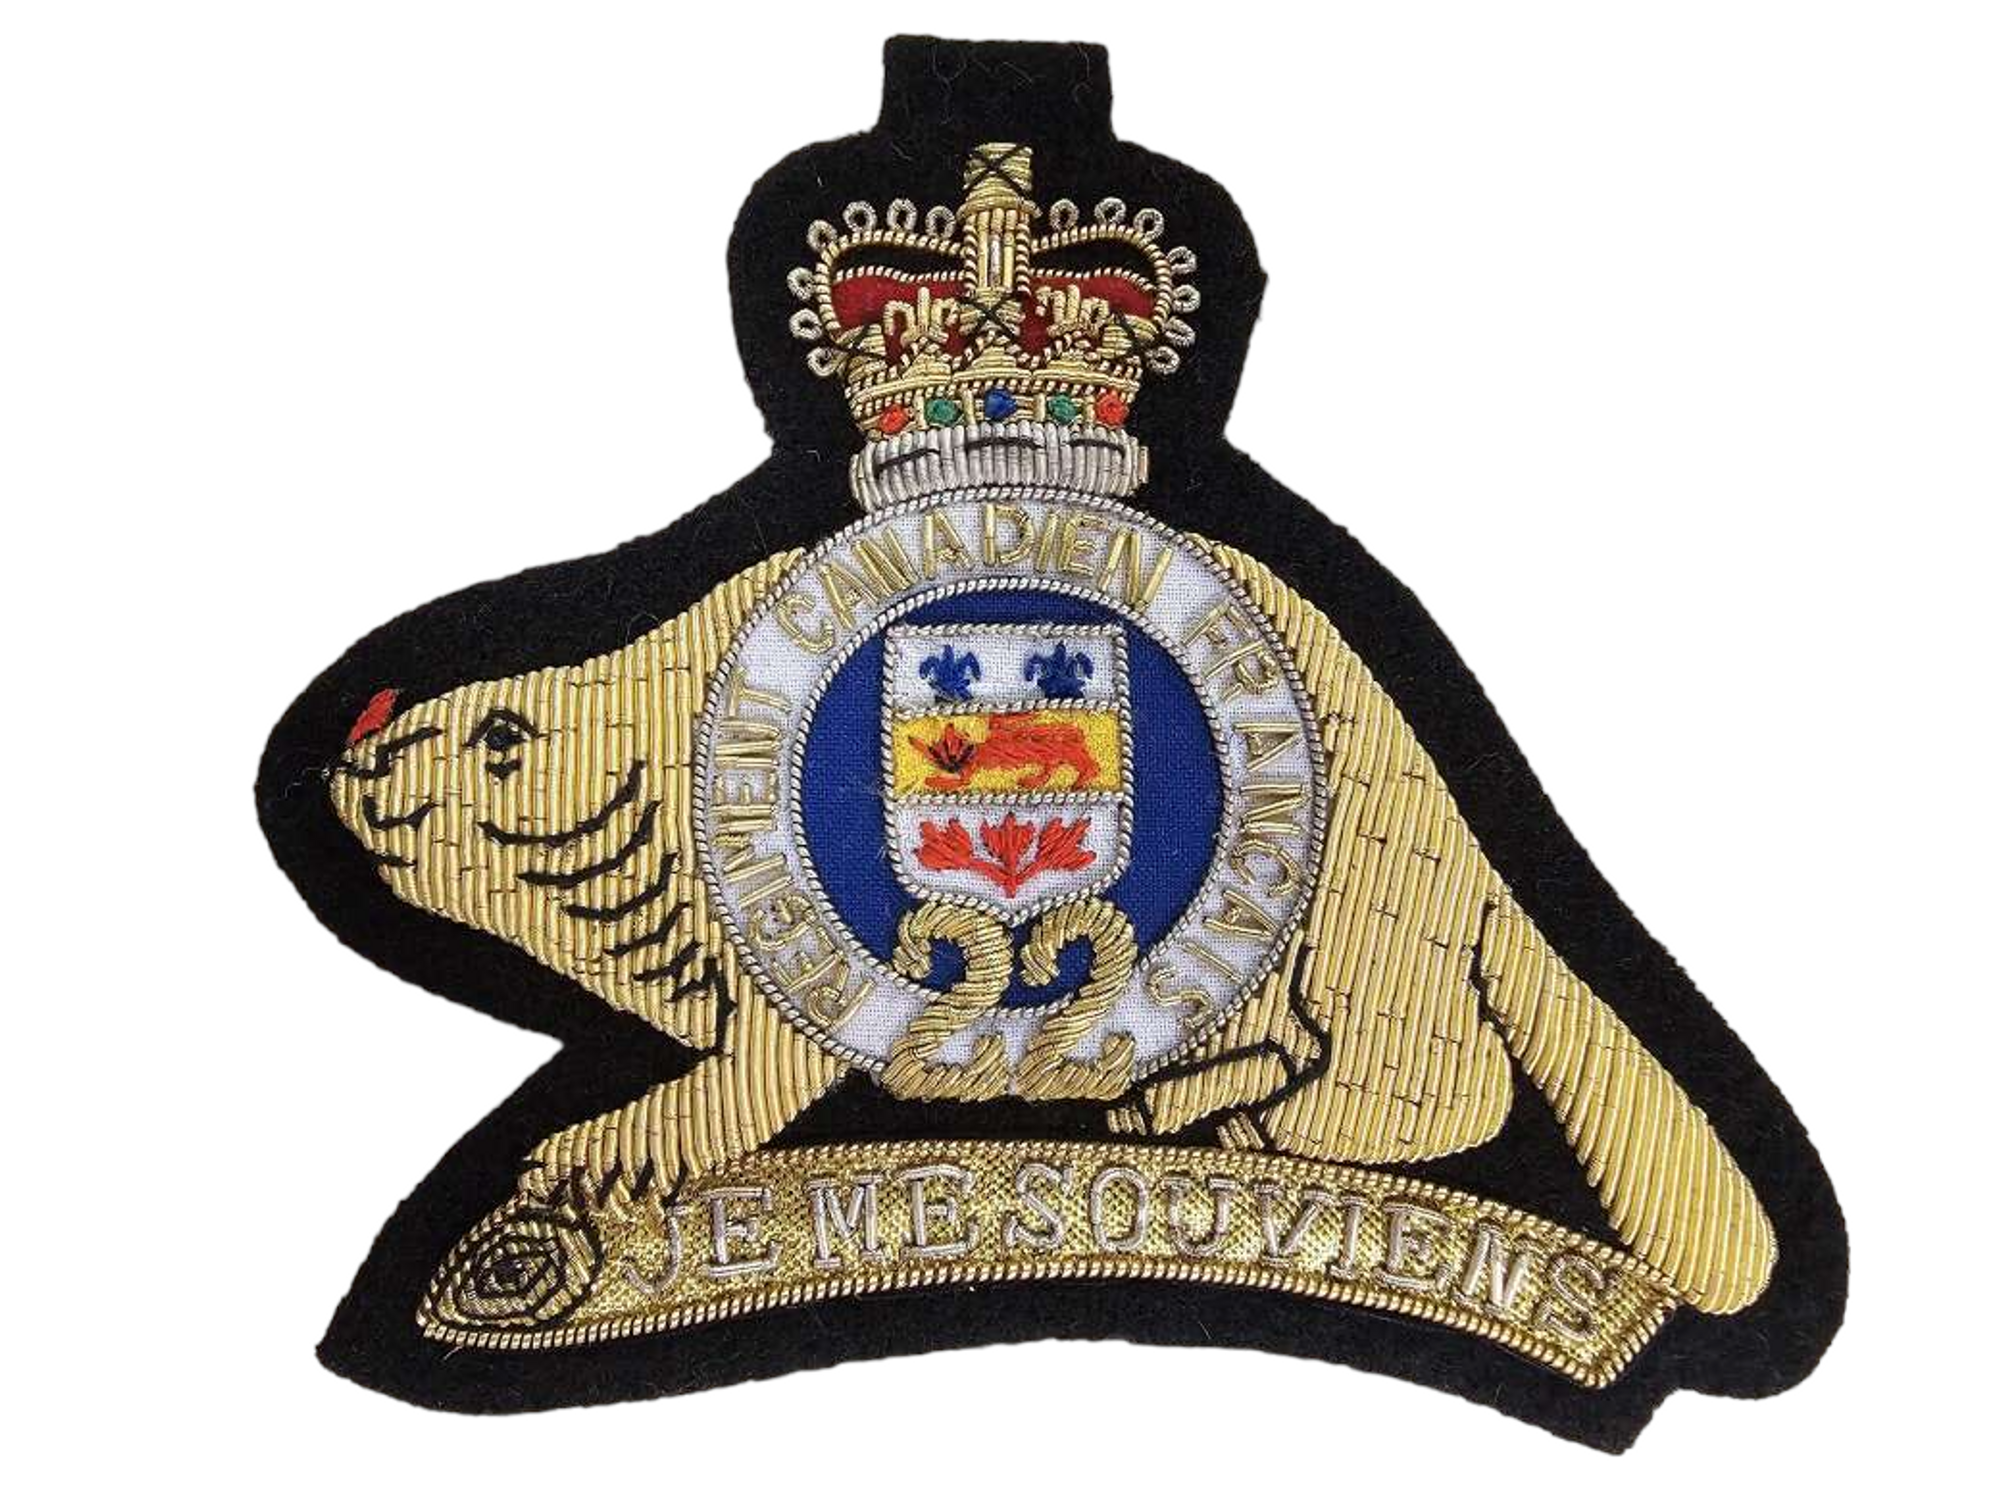 Canadian Armed Forces Royal 22nd Regiment Blazer Crest